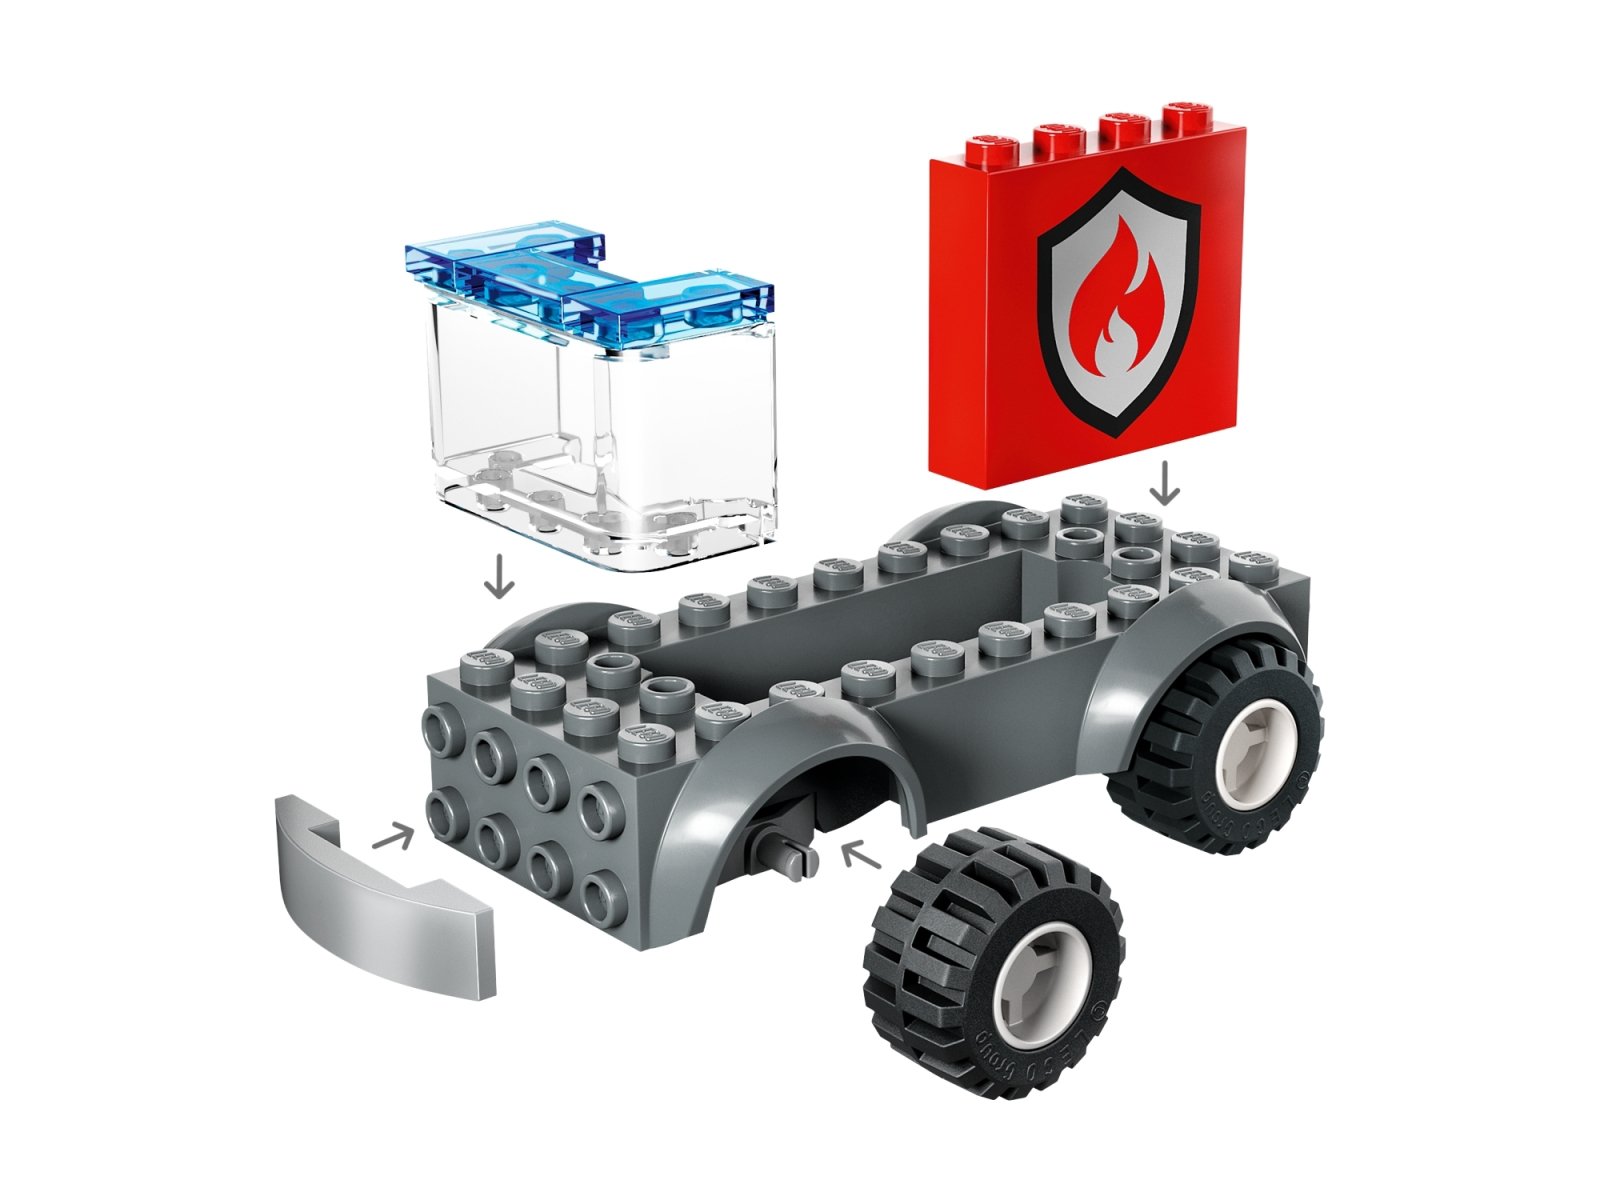 LEGO City Remiza strażacka i wóz strażacki 60375